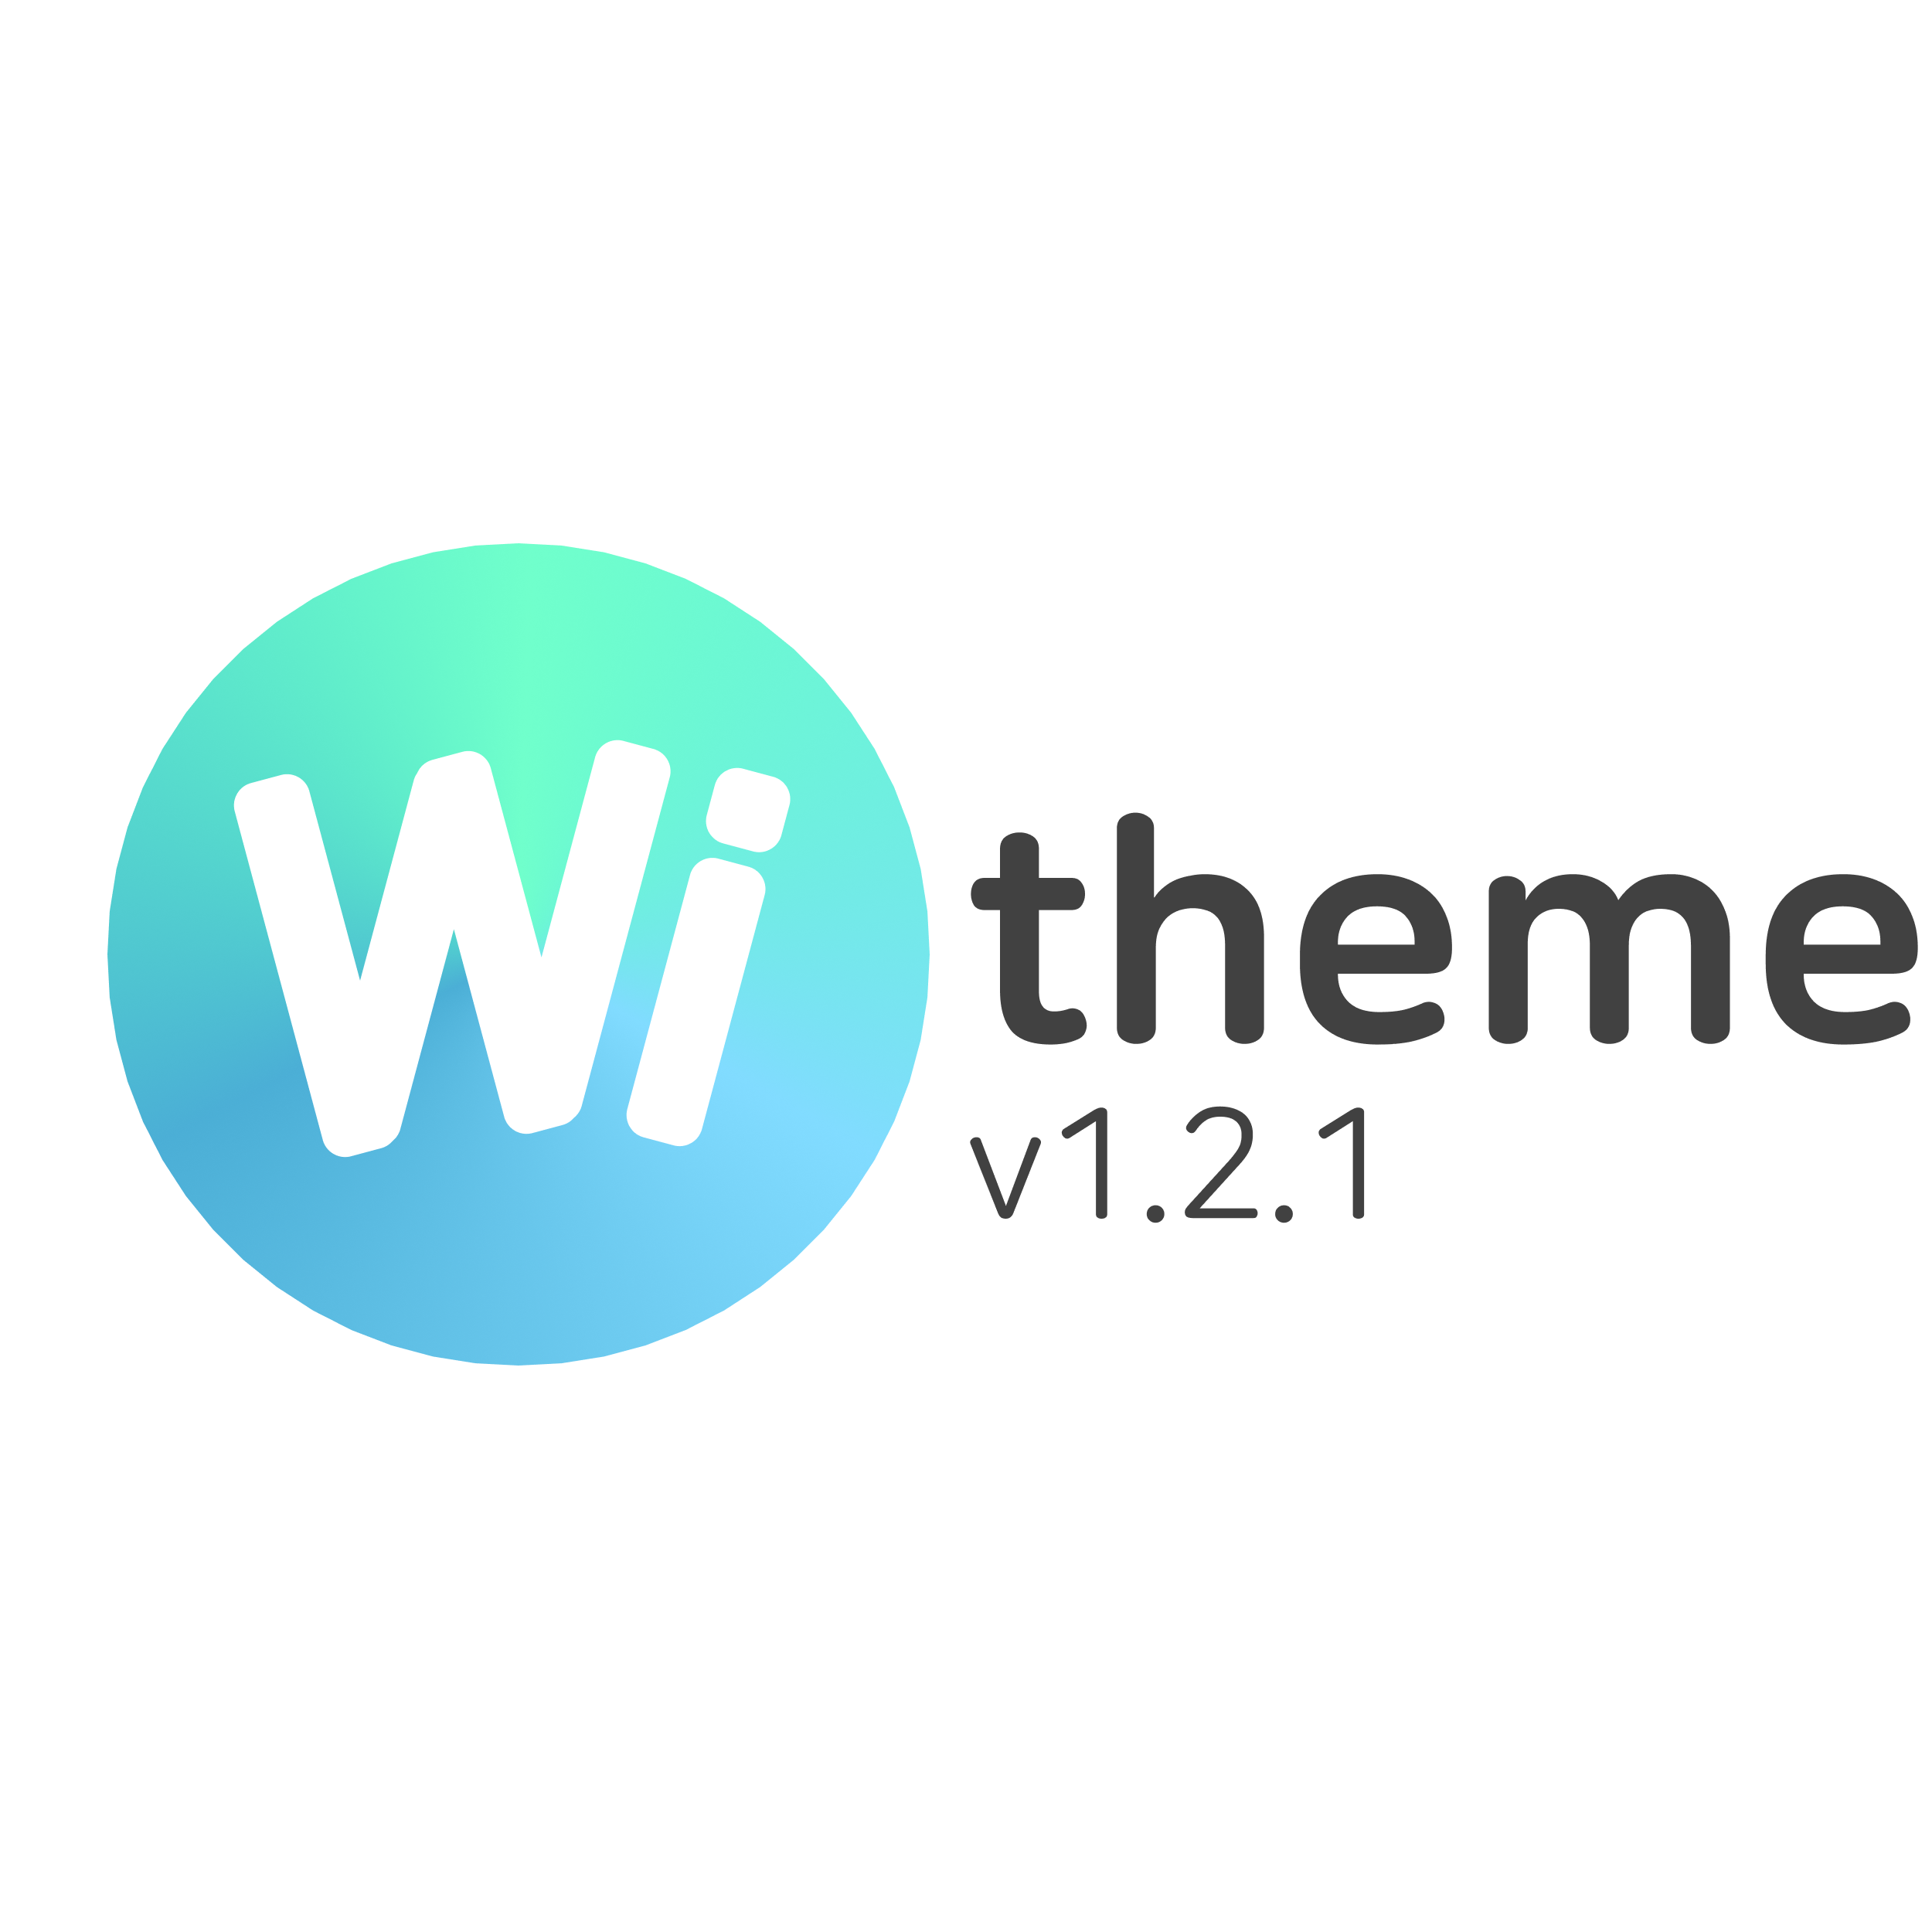 Wi theme 1.2.1 업데이트 사항 5